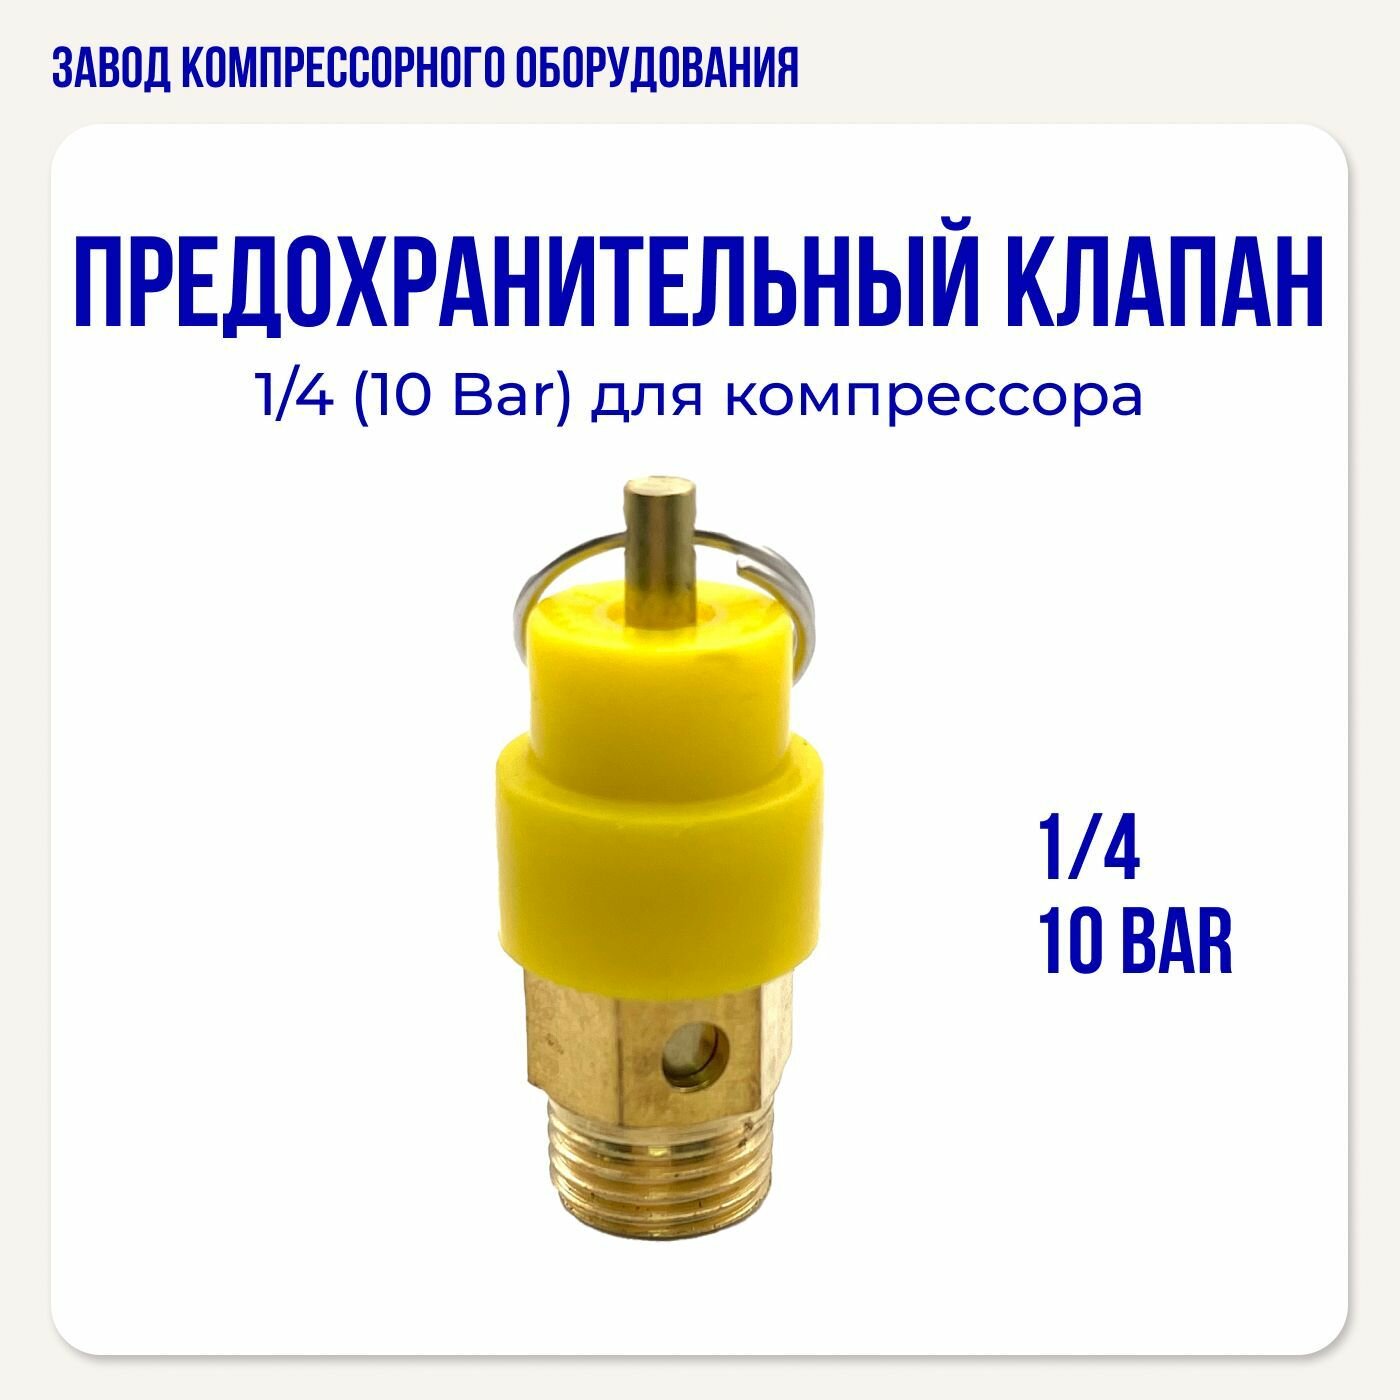 Предохранительный клапан 1/4 (10 бар) для воздушного компрессора